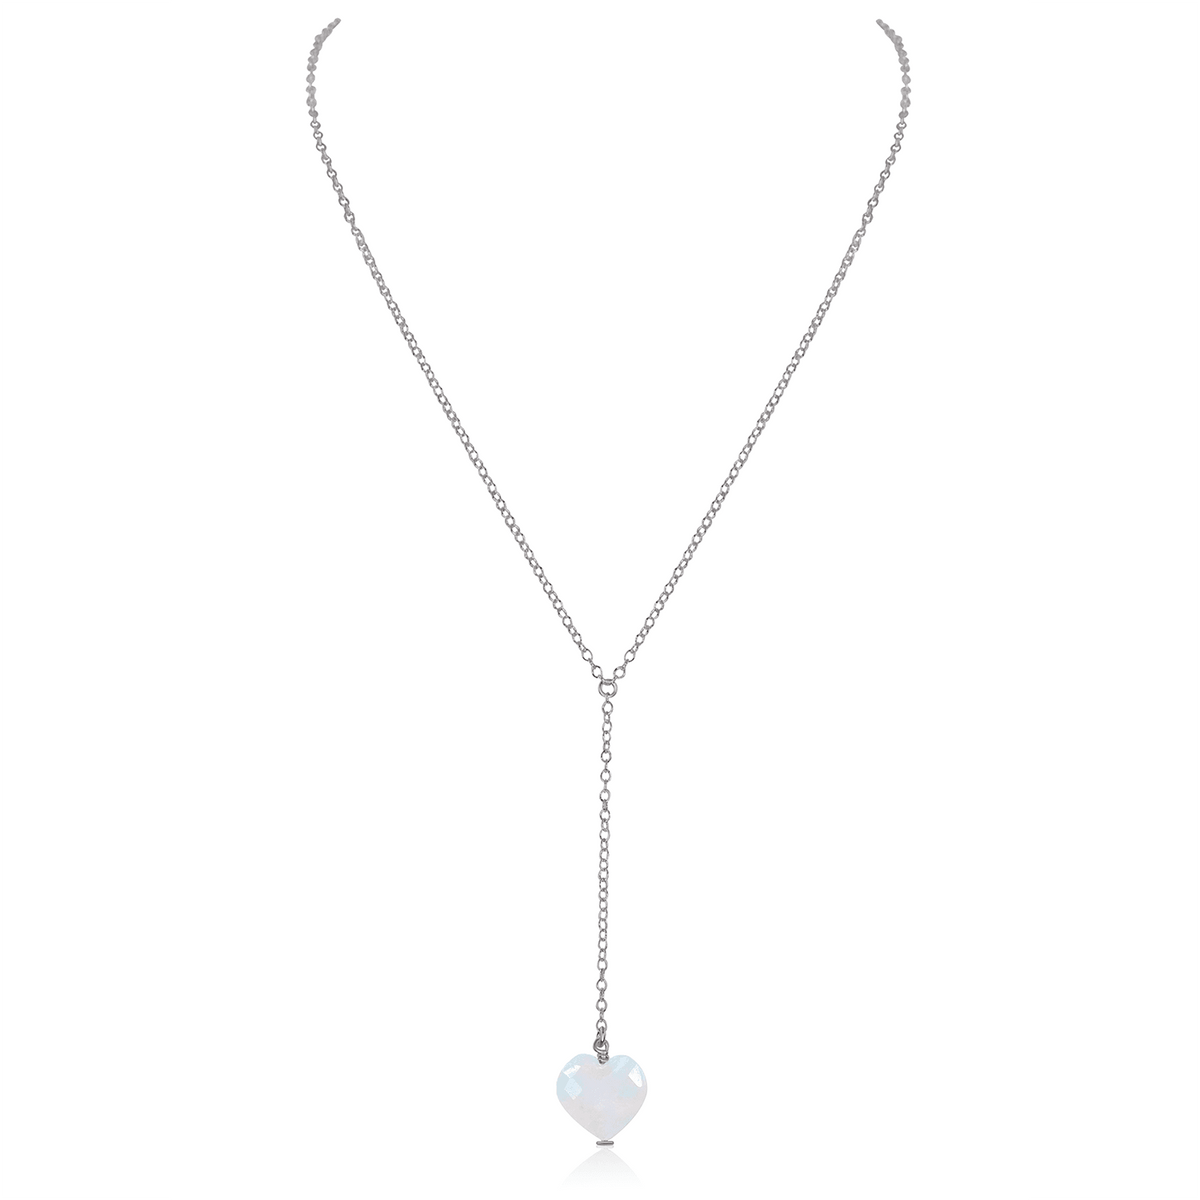 Rainbow Moonstone Crystal Heart Lariat Necklace - Rainbow Moonstone Crystal Heart Lariat Necklace - Stainless Steel - Luna Tide Handmade Crystal Jewellery